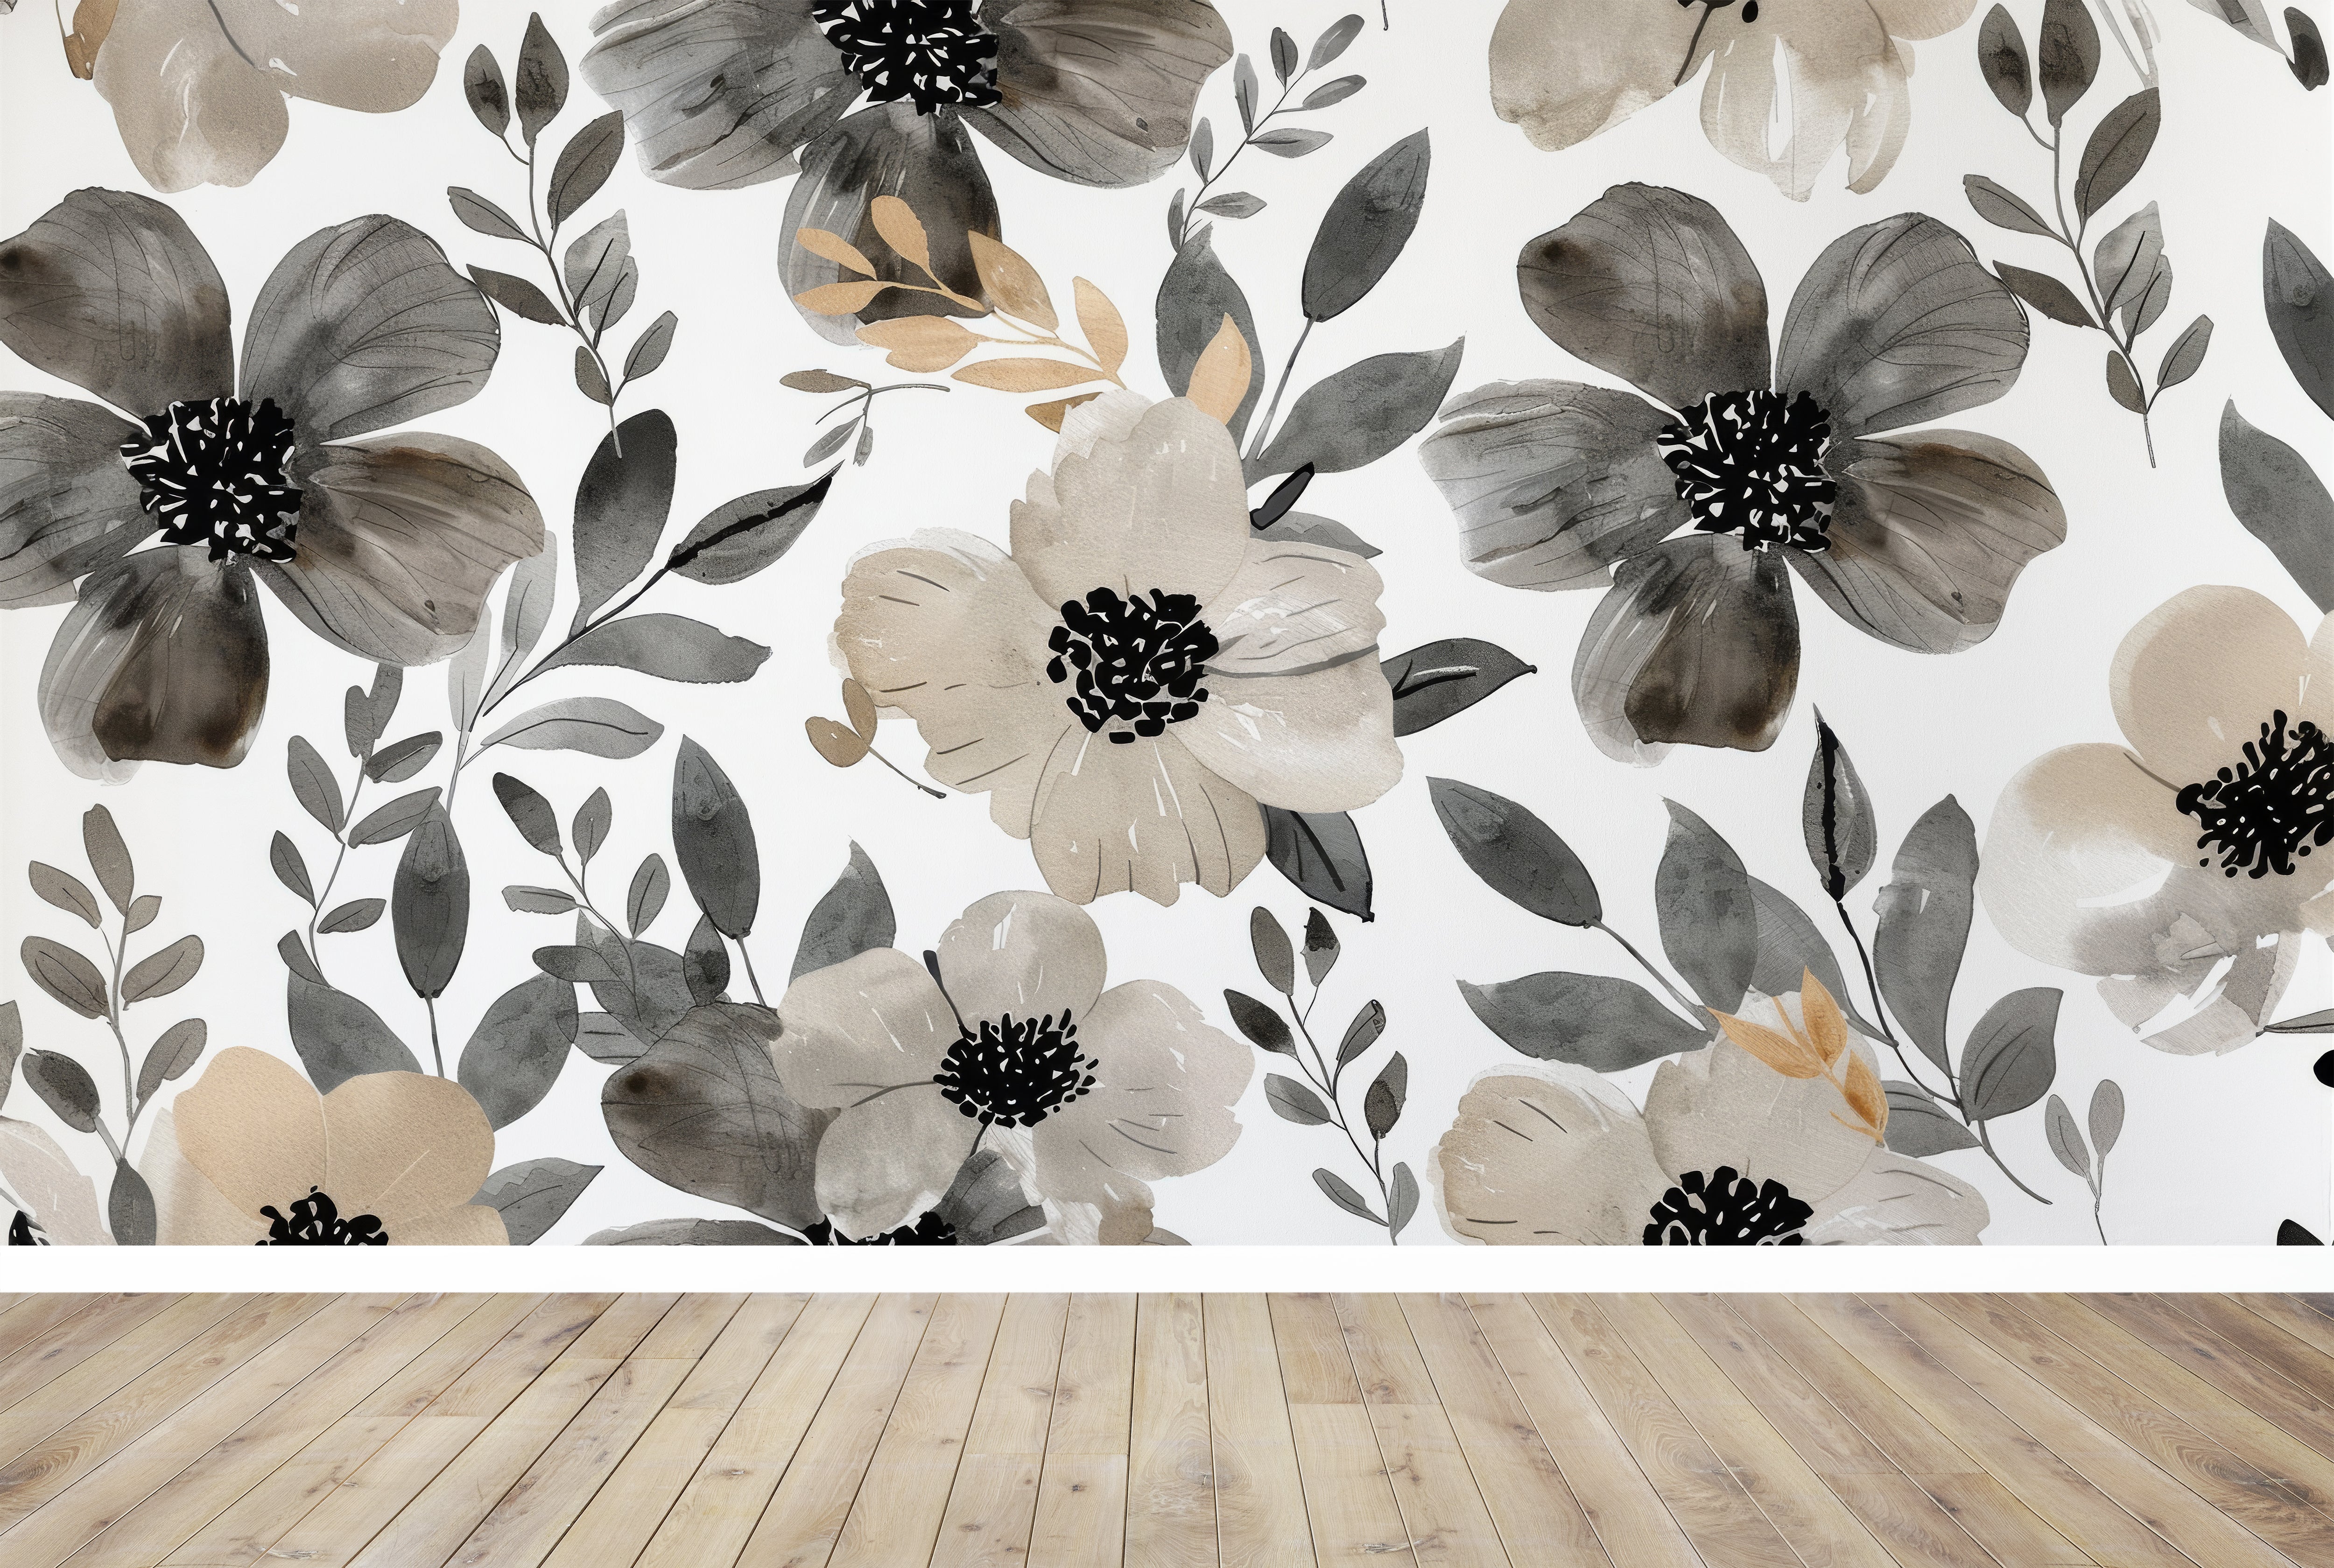 Blumenaufguss: Grau- und Beigetöne an den Wänden